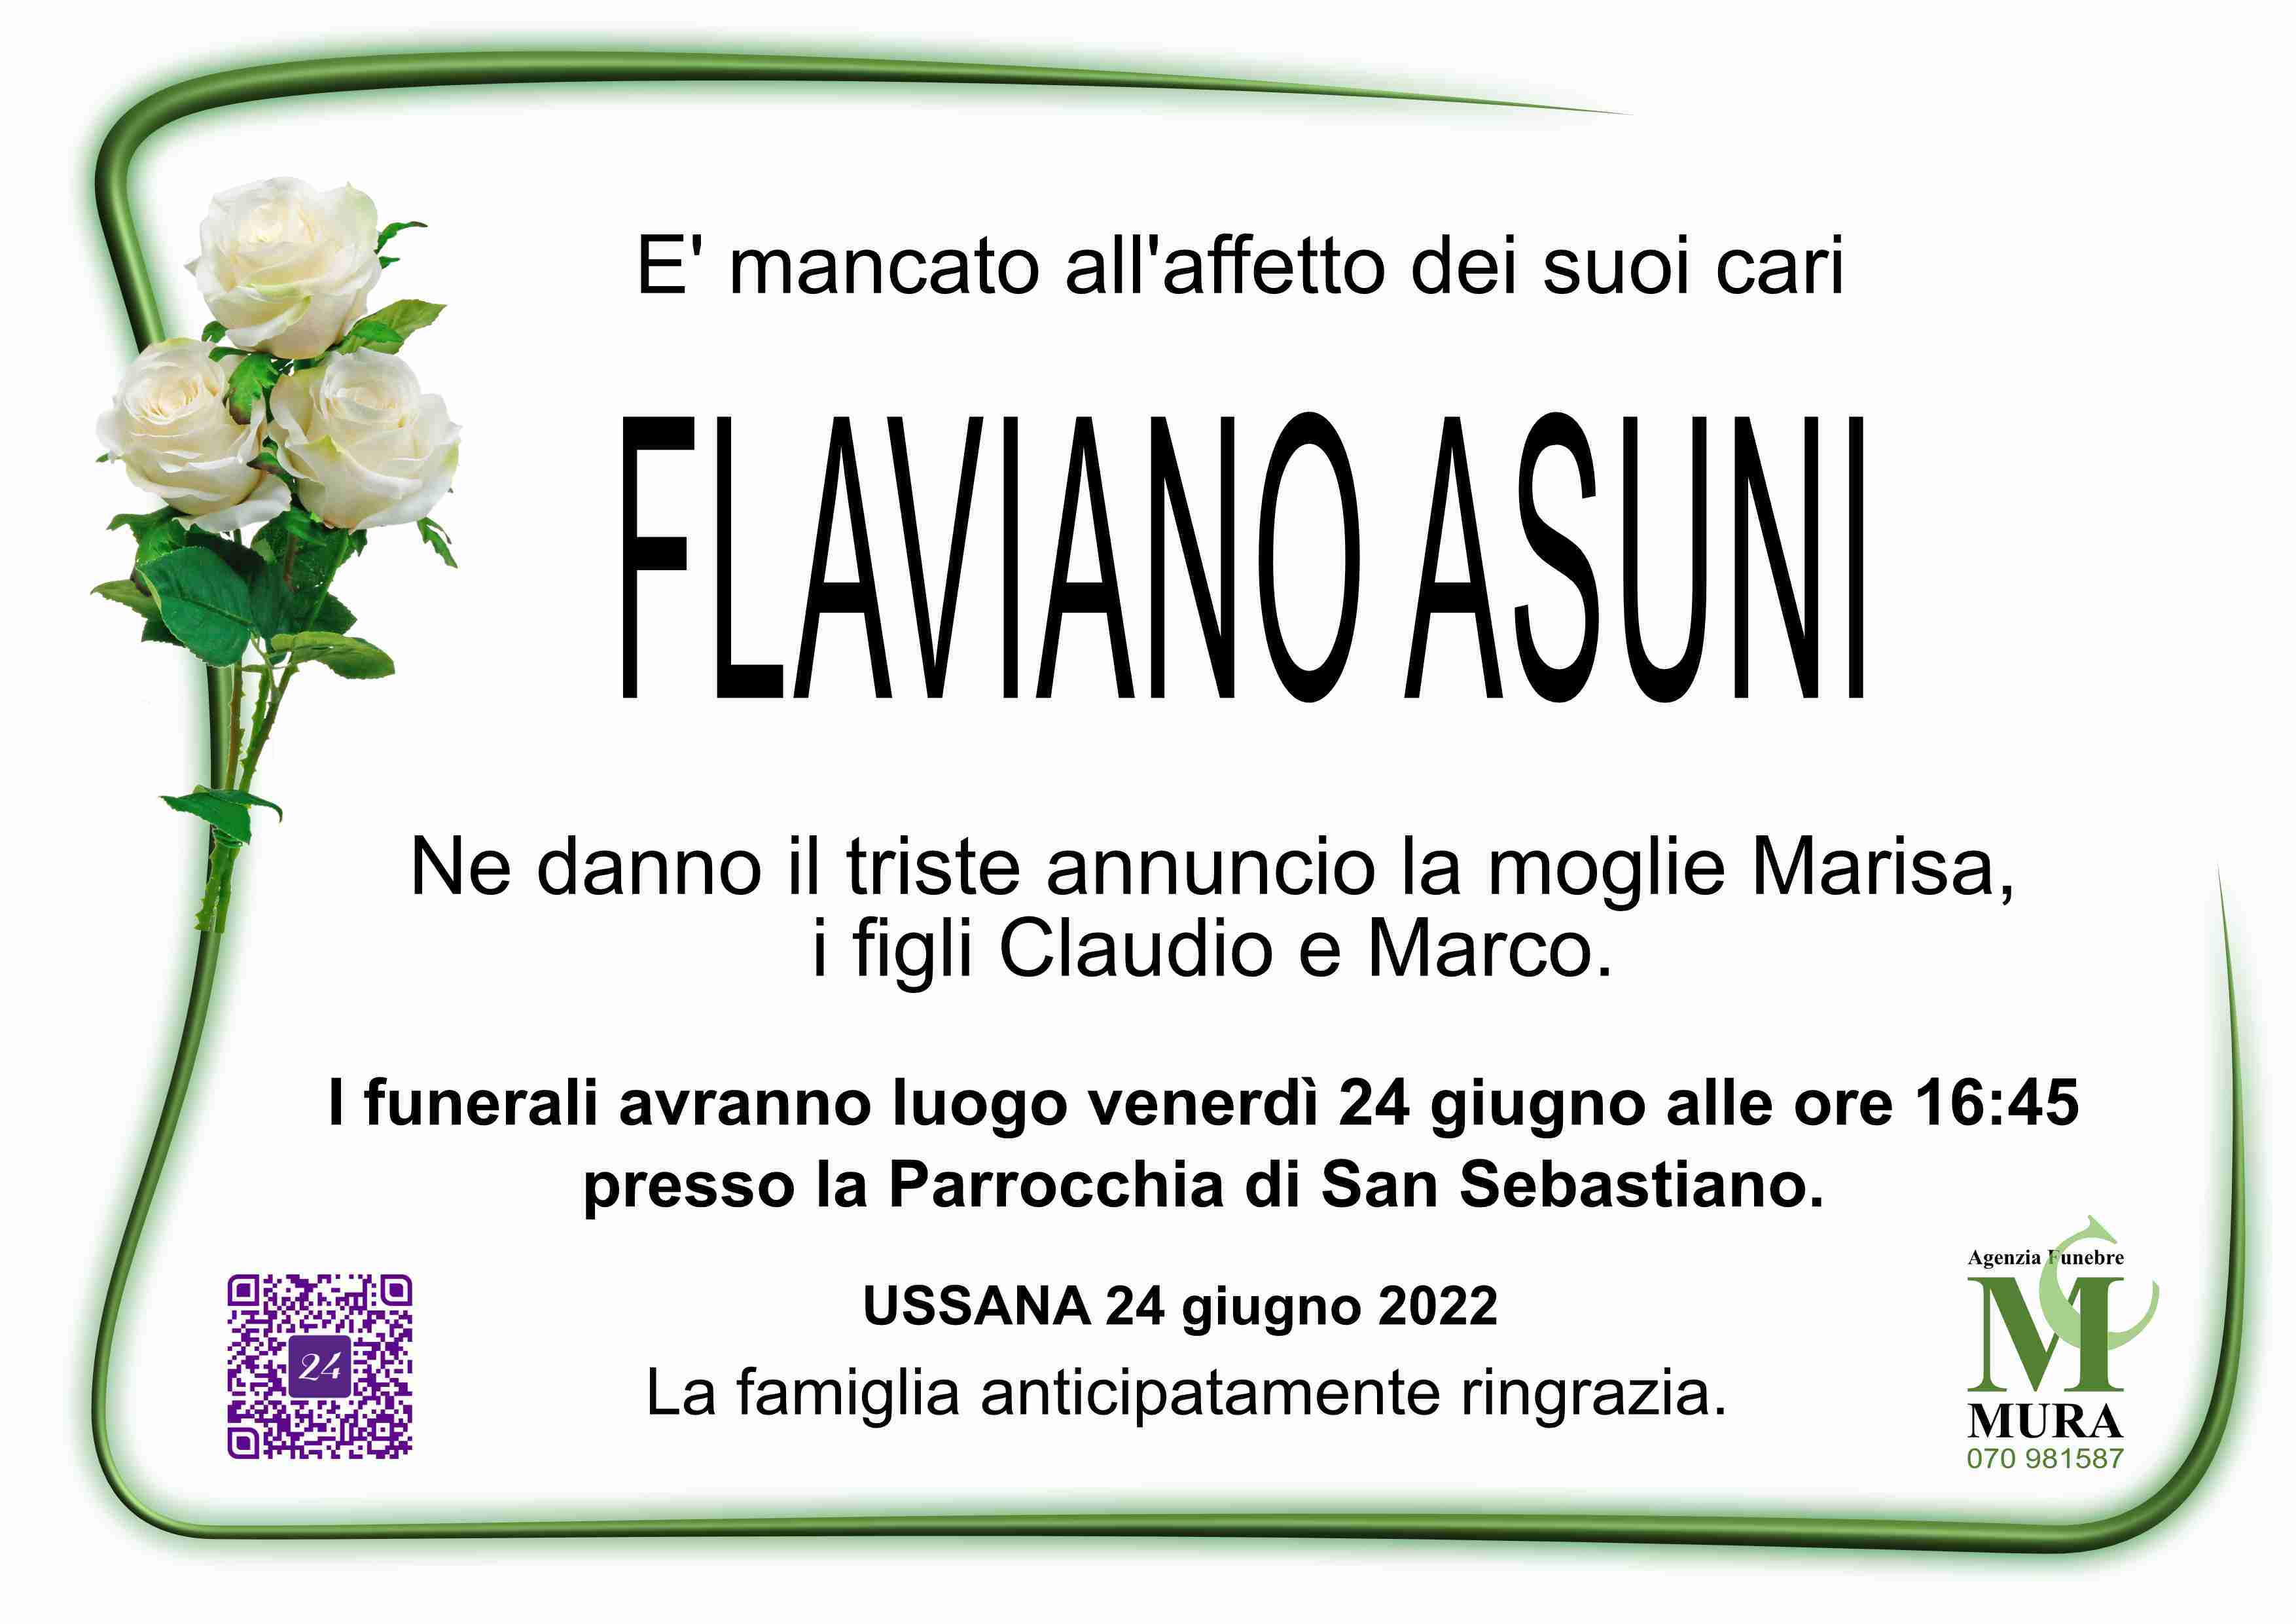 Flaviano Asuni